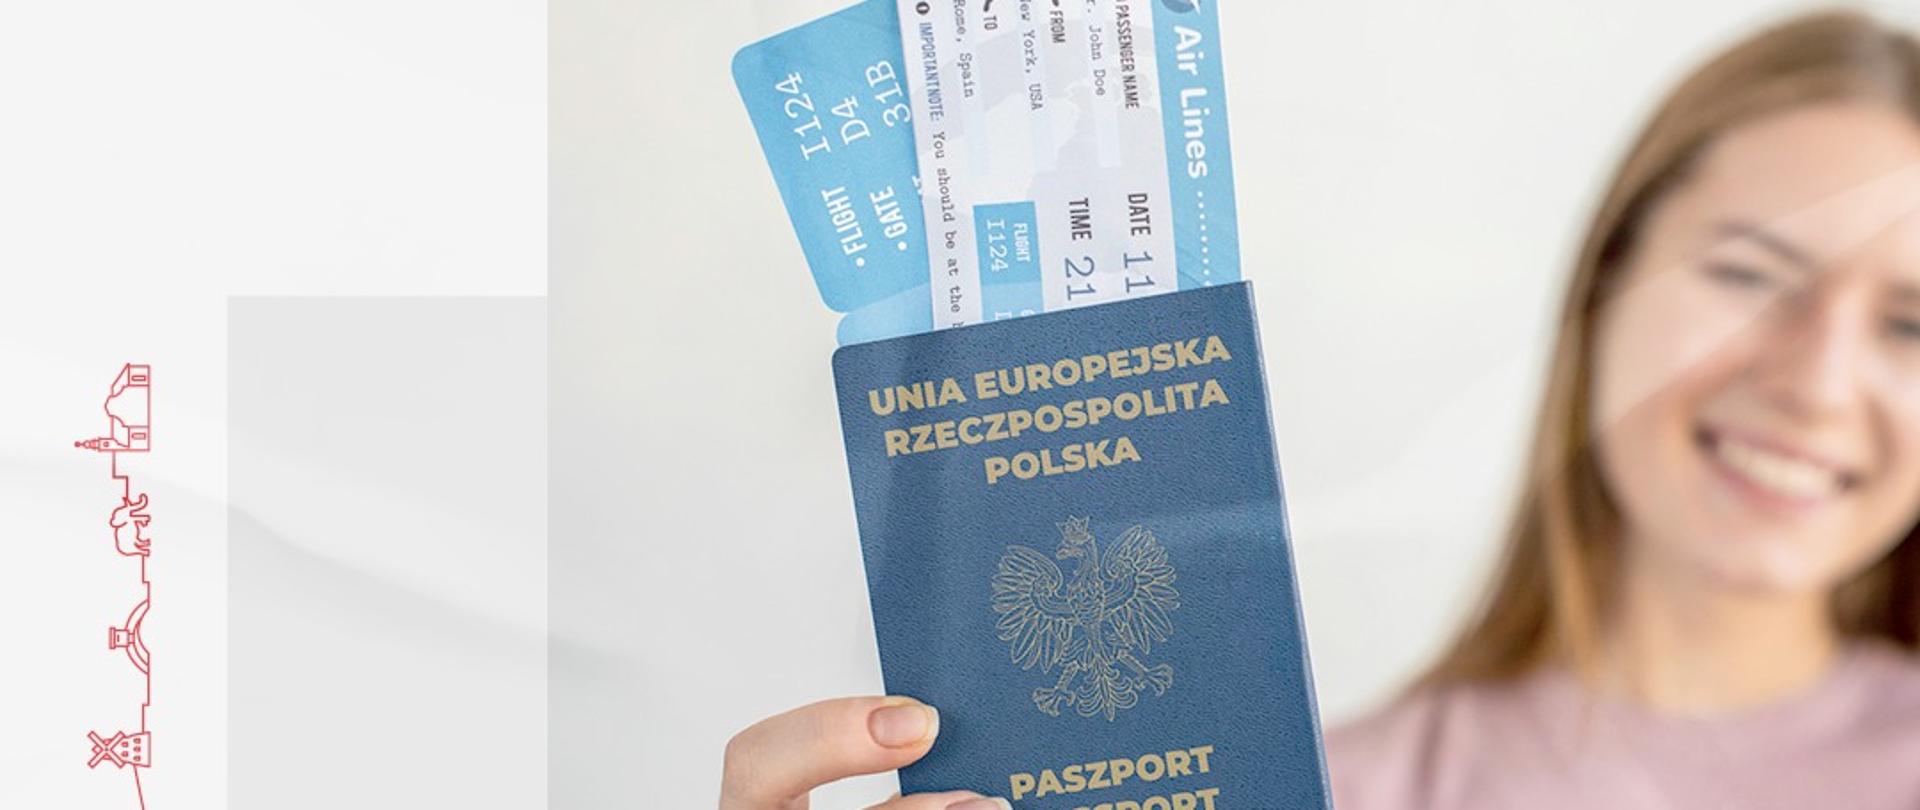 Kobieta trzyma w dłoni paszport oraz bilety lotnicze